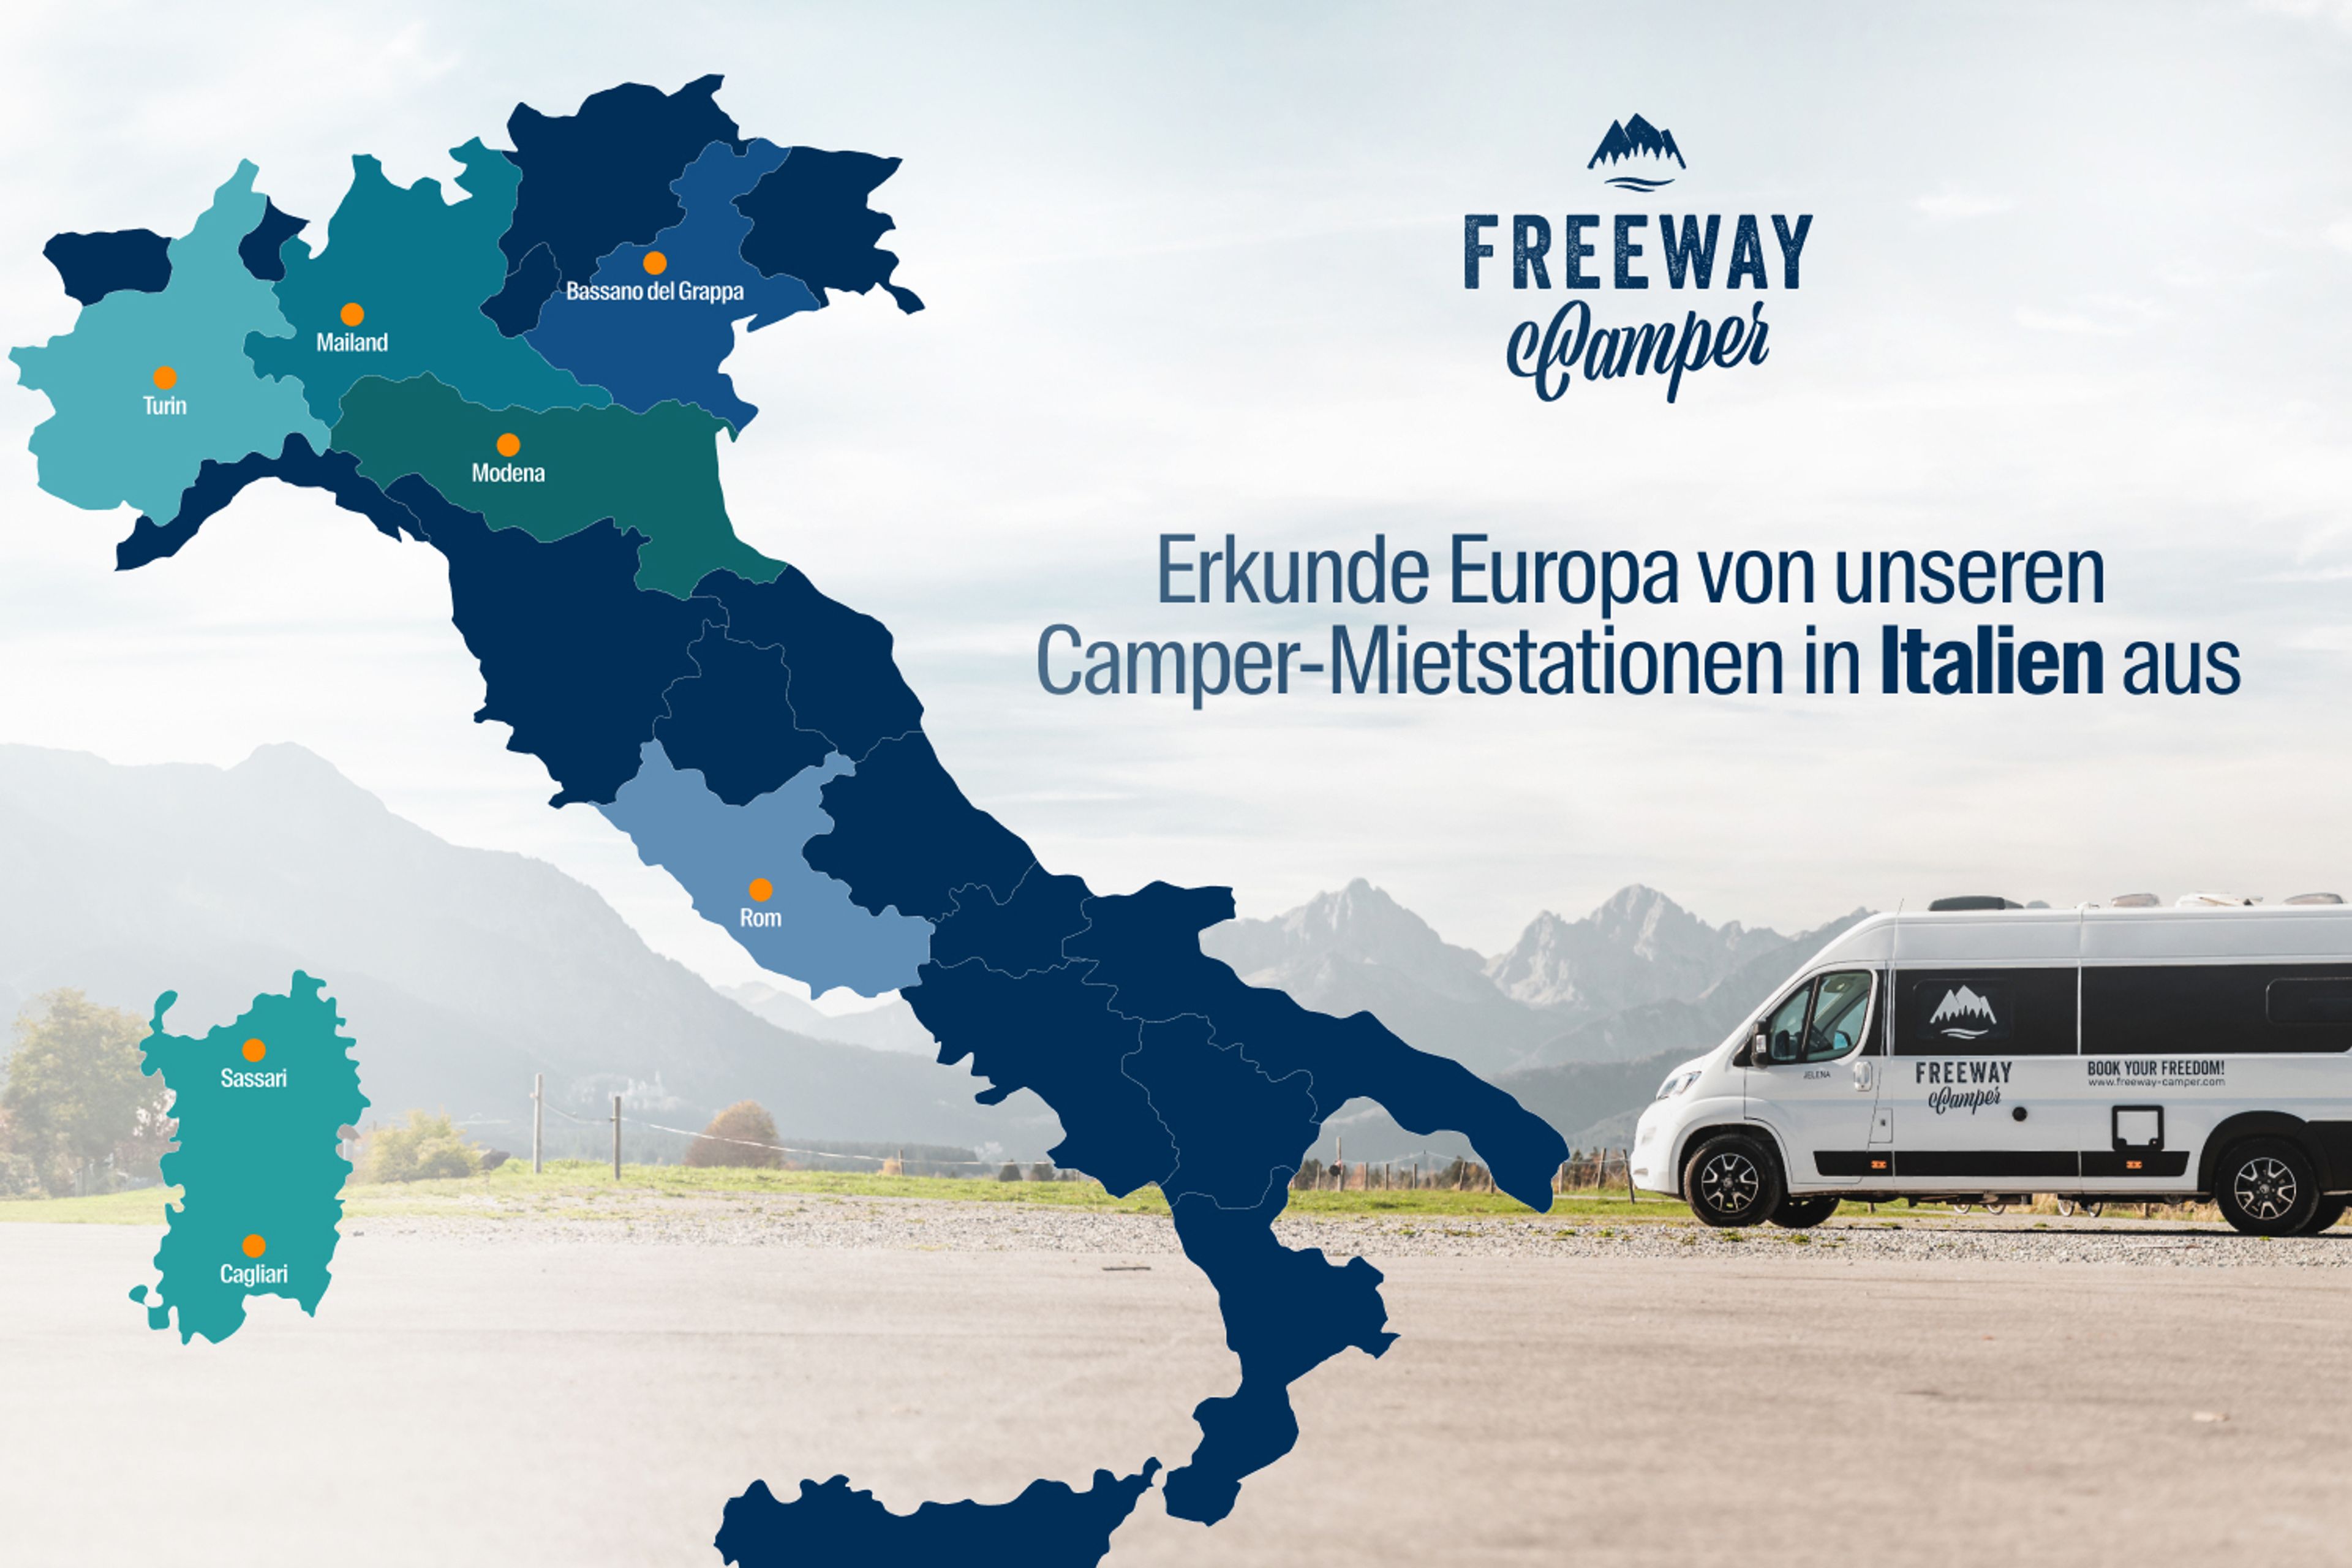 FreewayCamper Standorte in Italien: mailand, modena, turin, sassari (sardinien), Bassano Del Grappa für Camper- und Wohnmobilvermietung